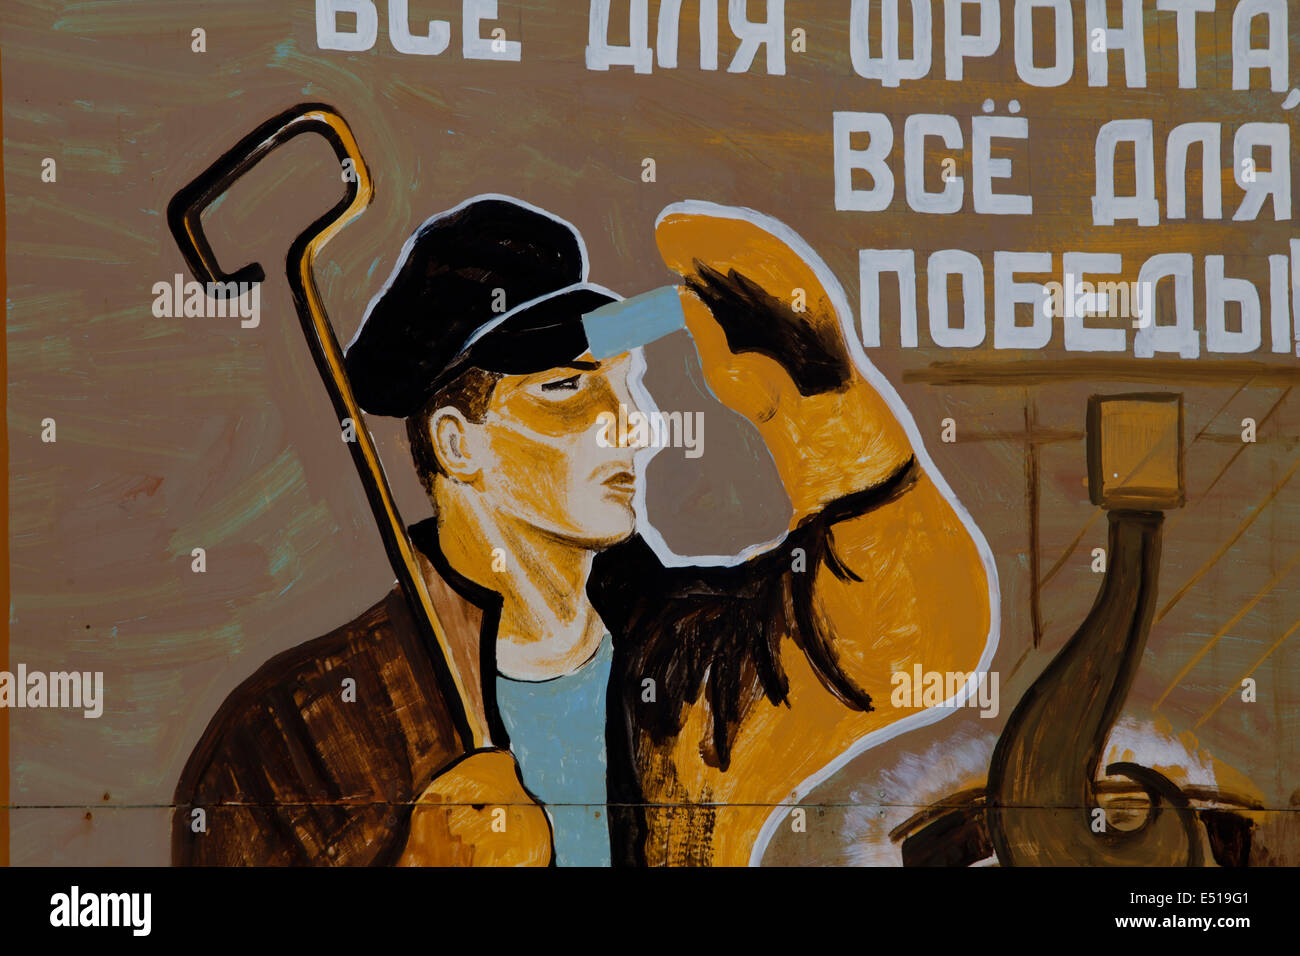 Les affiches de propagande de guerre russe art street Banque D'Images